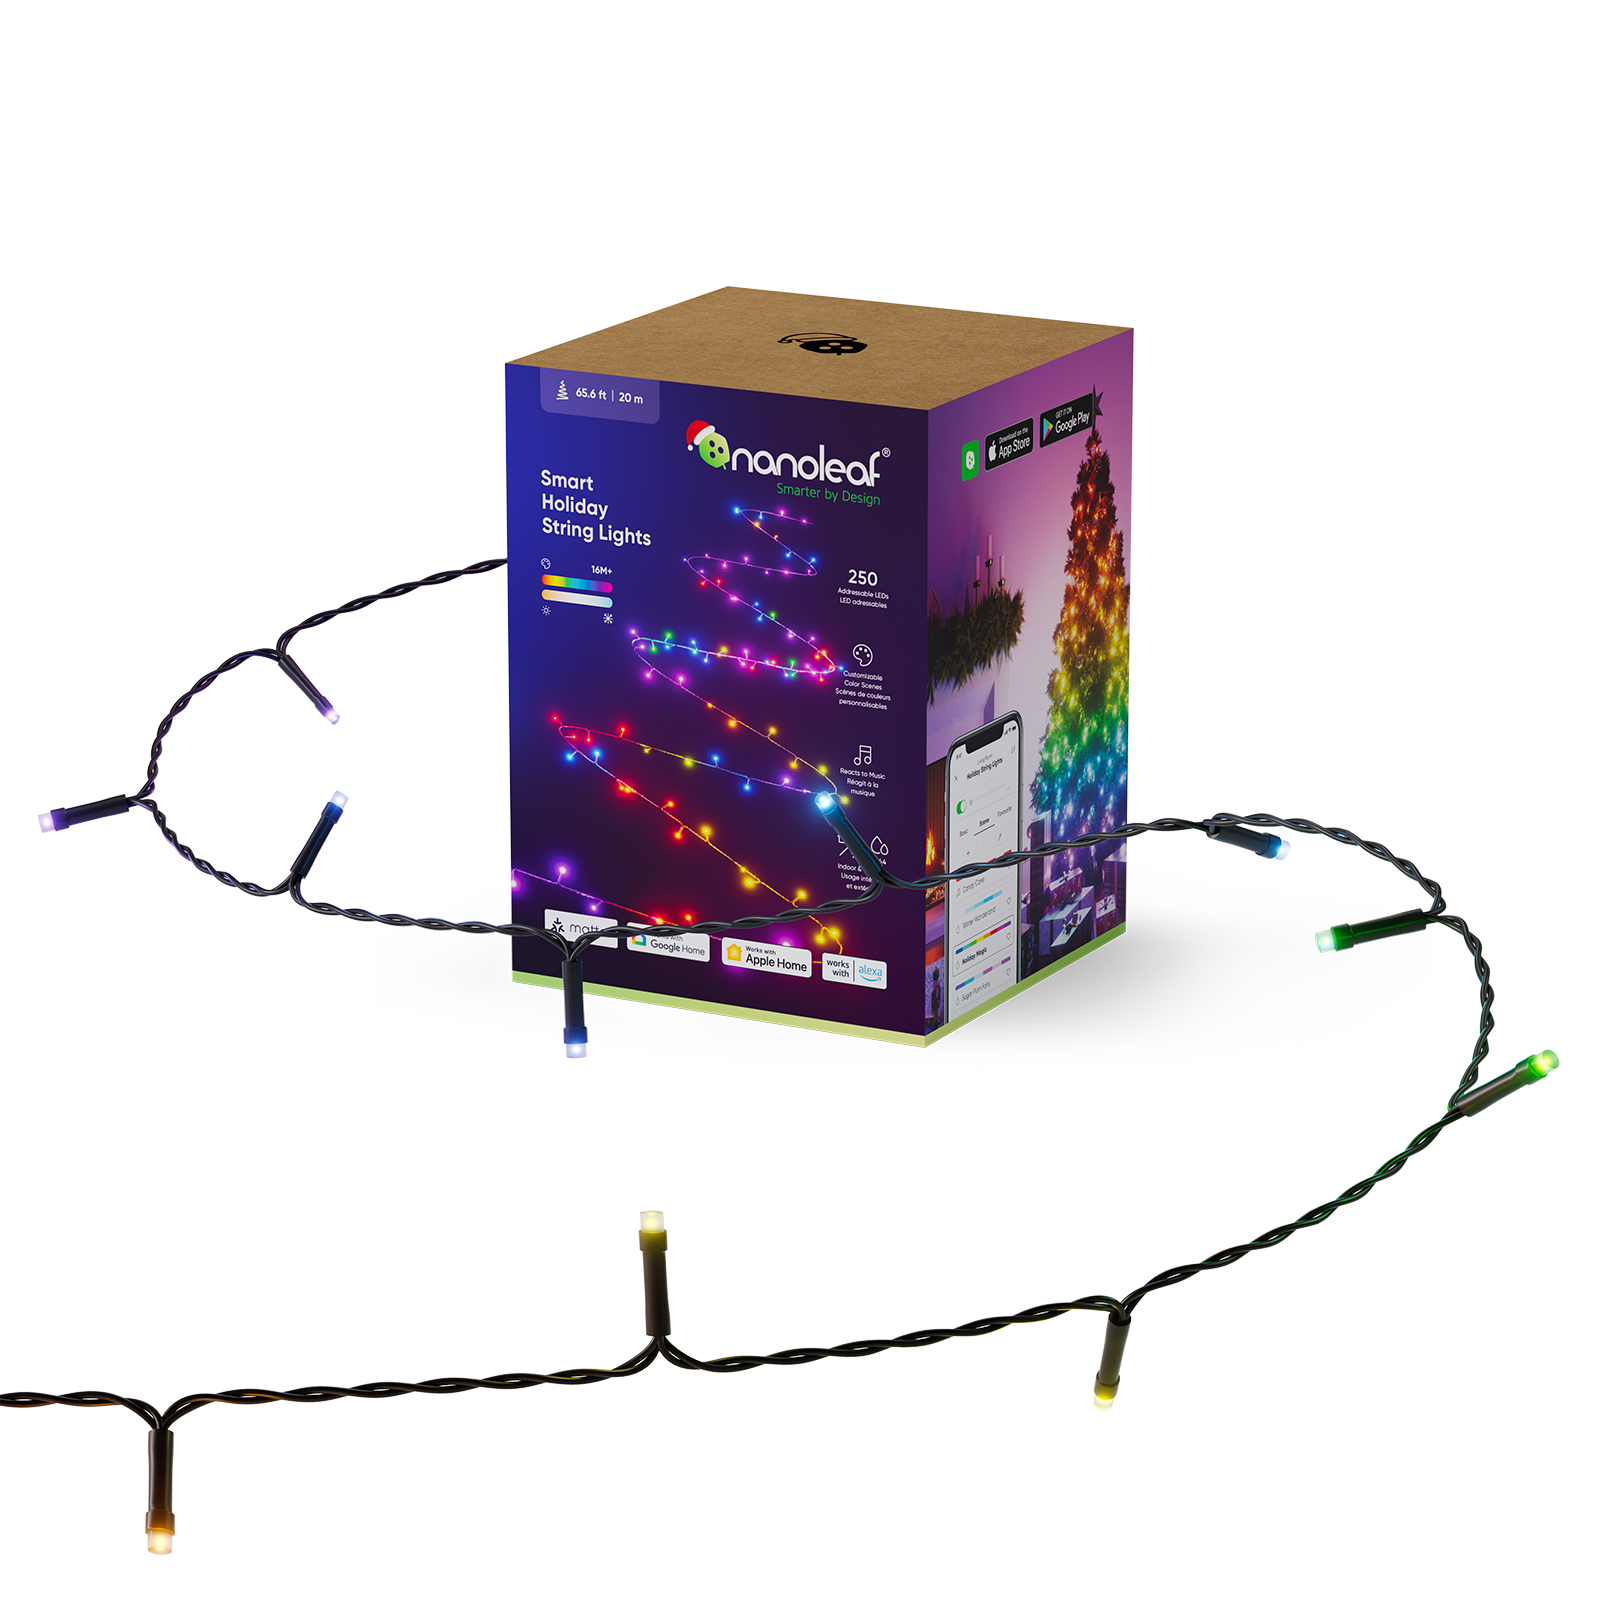 Nanoleaf Matter Smart Holiday String Lights